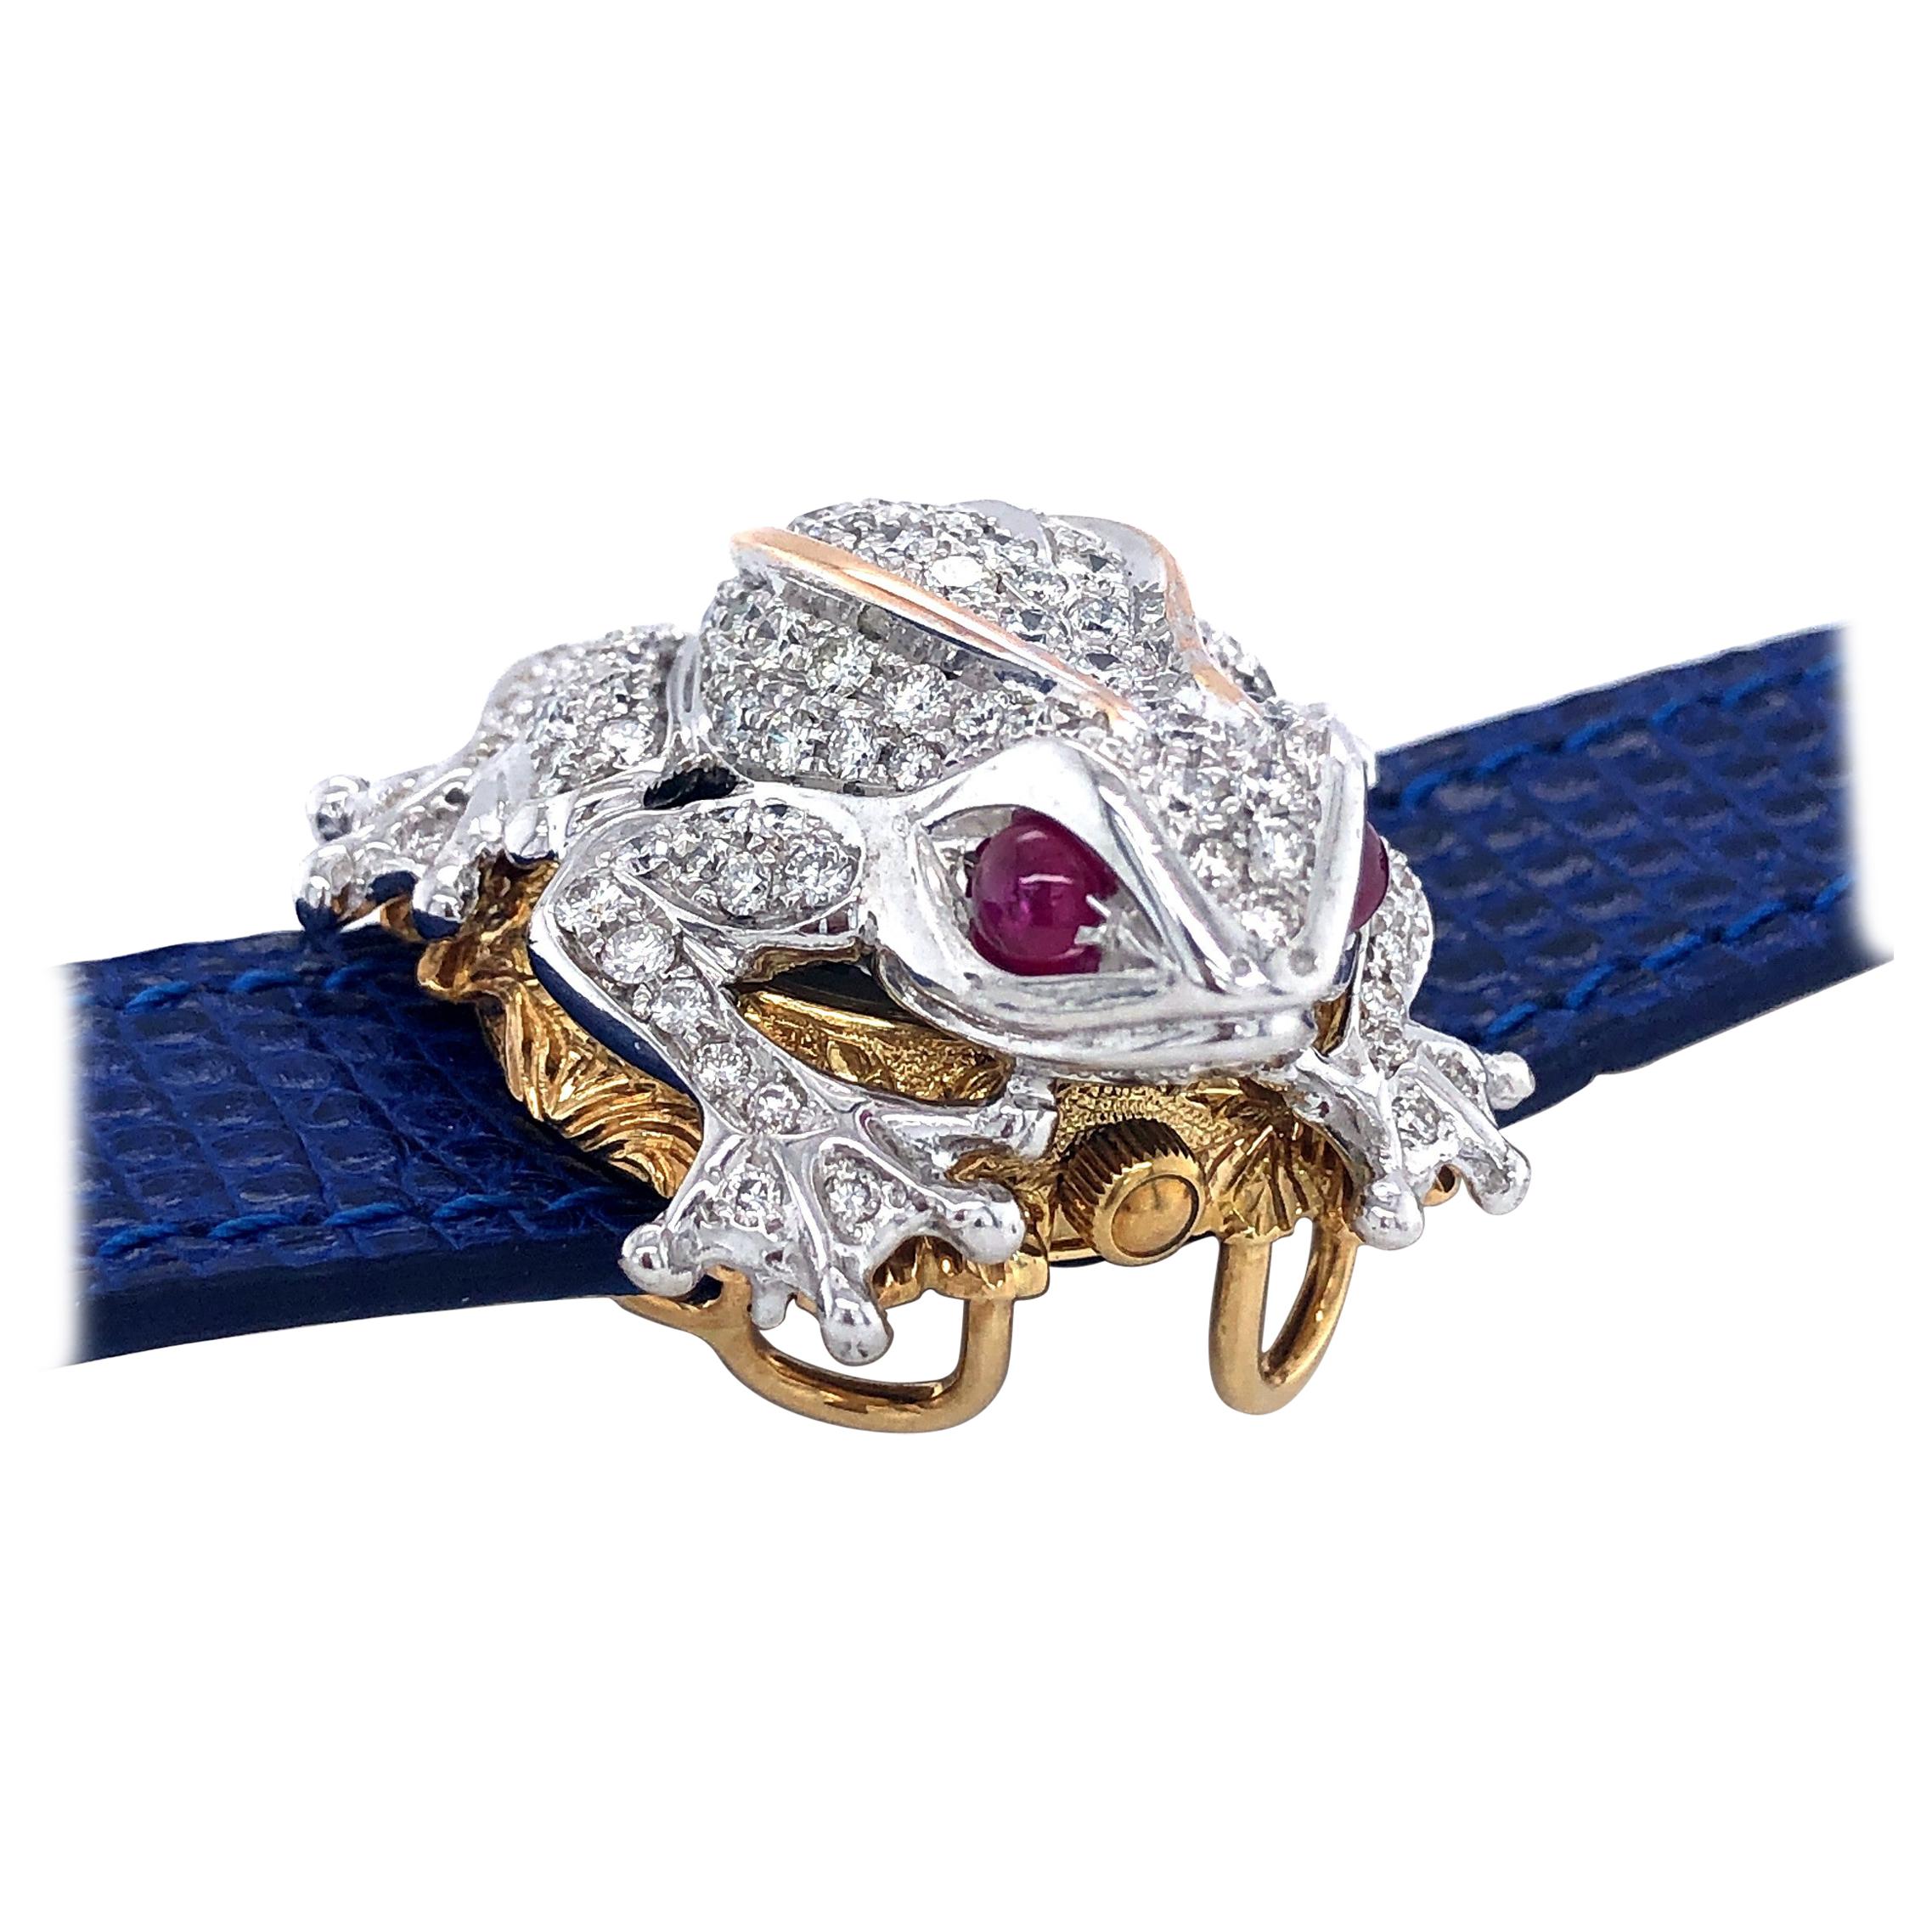 Zannetti Rana Scrigno Jewel Frog Wrist Watch / Bracelet, Diamonds & Ruby's